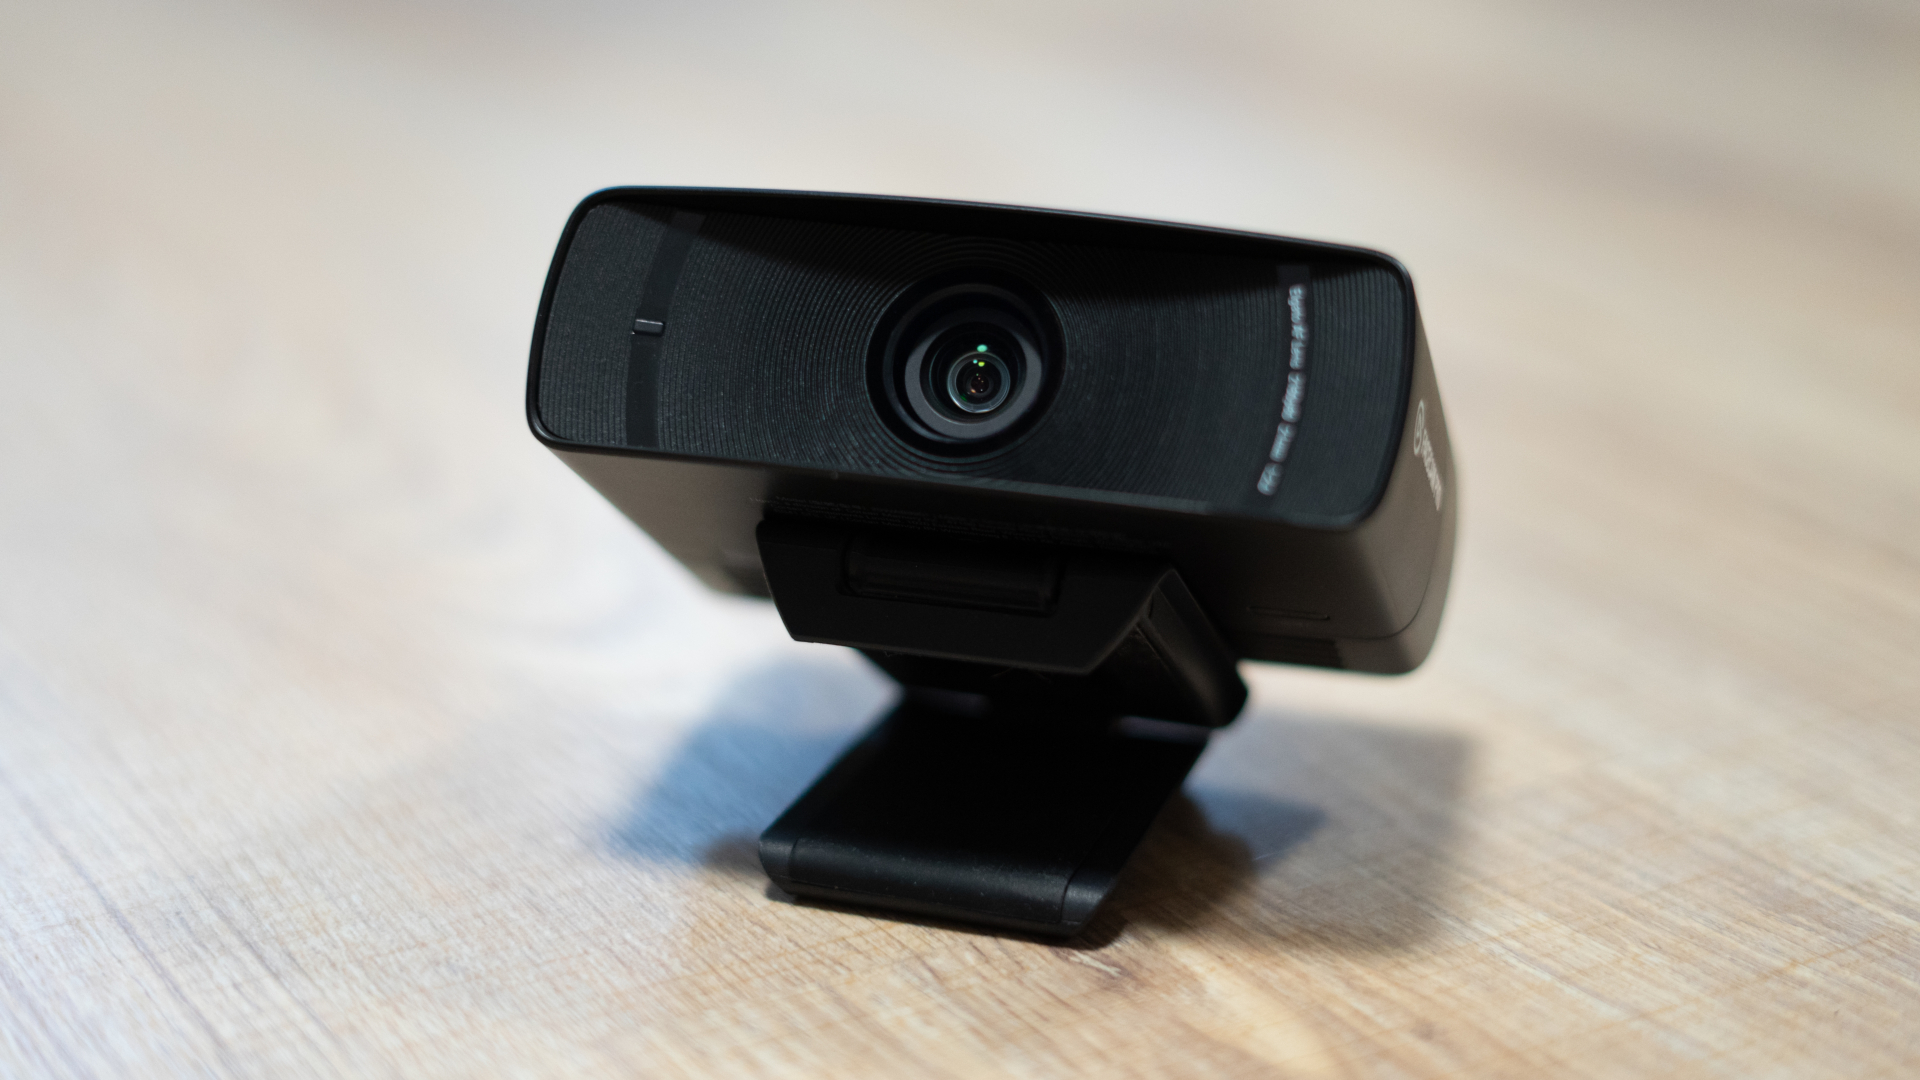 sogar teuren Pro: Facecam macht Diese meiner Elgato im Konkurrenz Test Profikamera Webcam